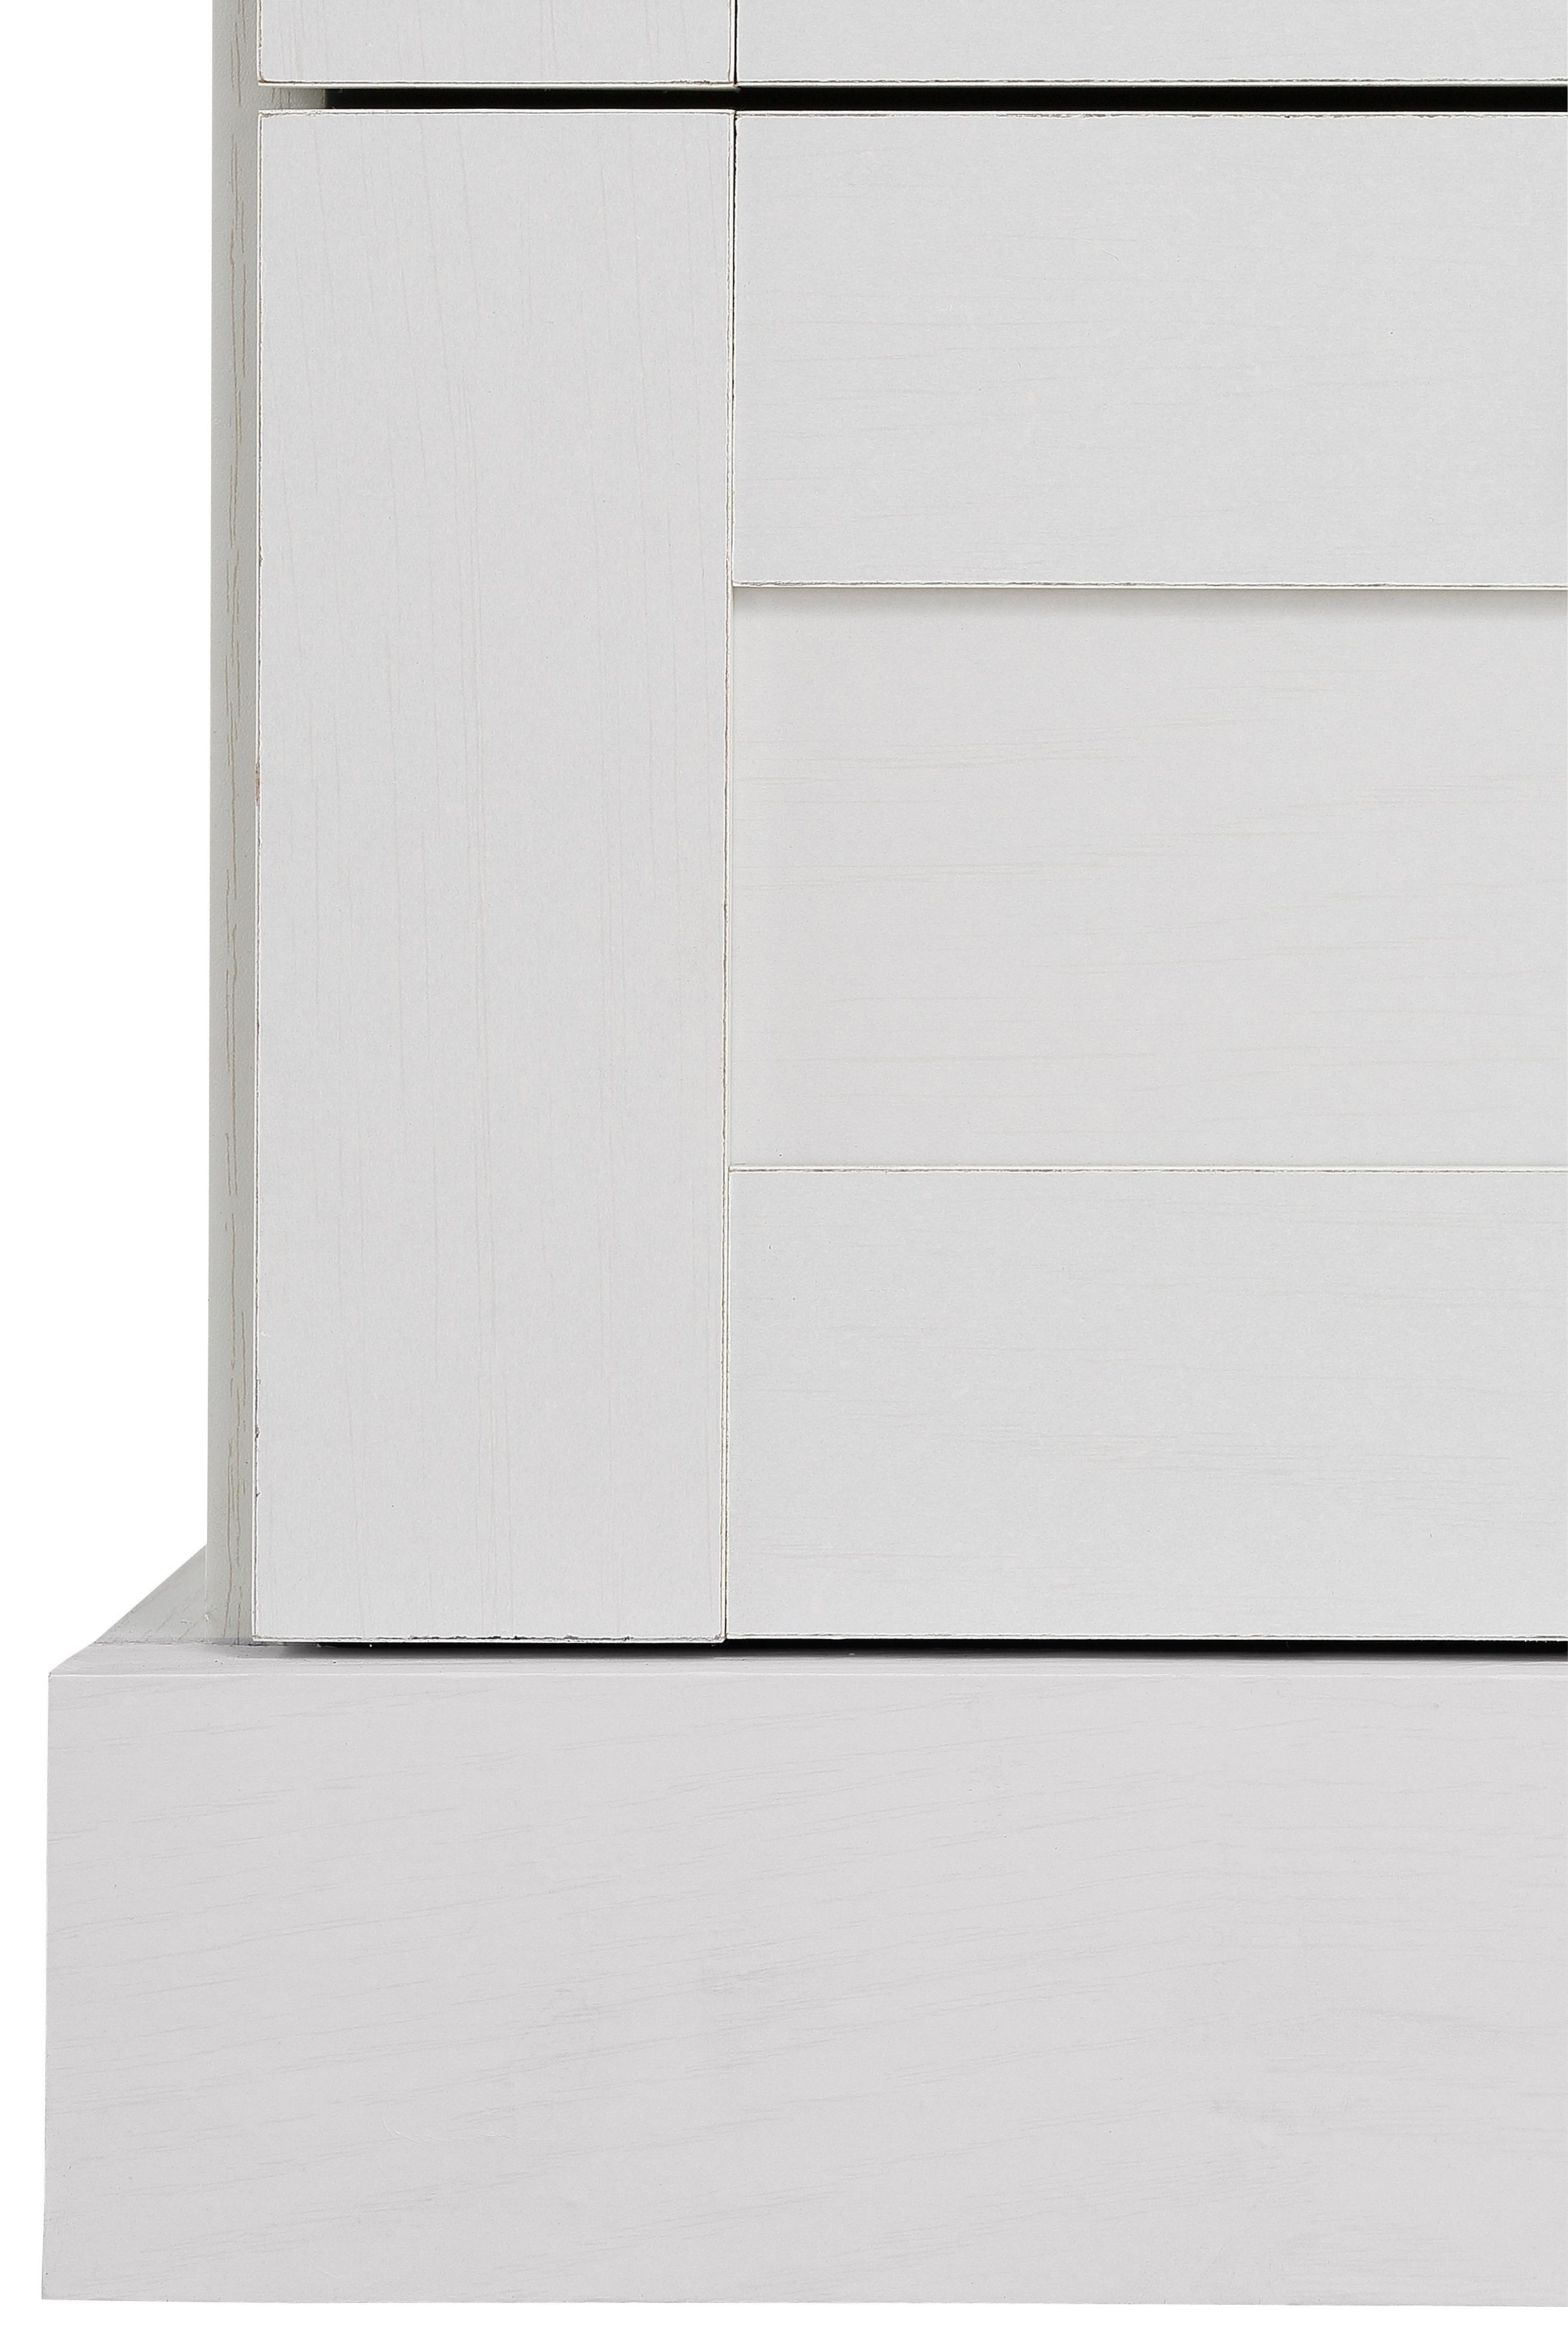 Home affaire Drehtürenschrank Binz mit Stauraummöglichkeiten, Höhe 130 cm Mehrzweckschrank, weiß/eichefarben Holz-Optik